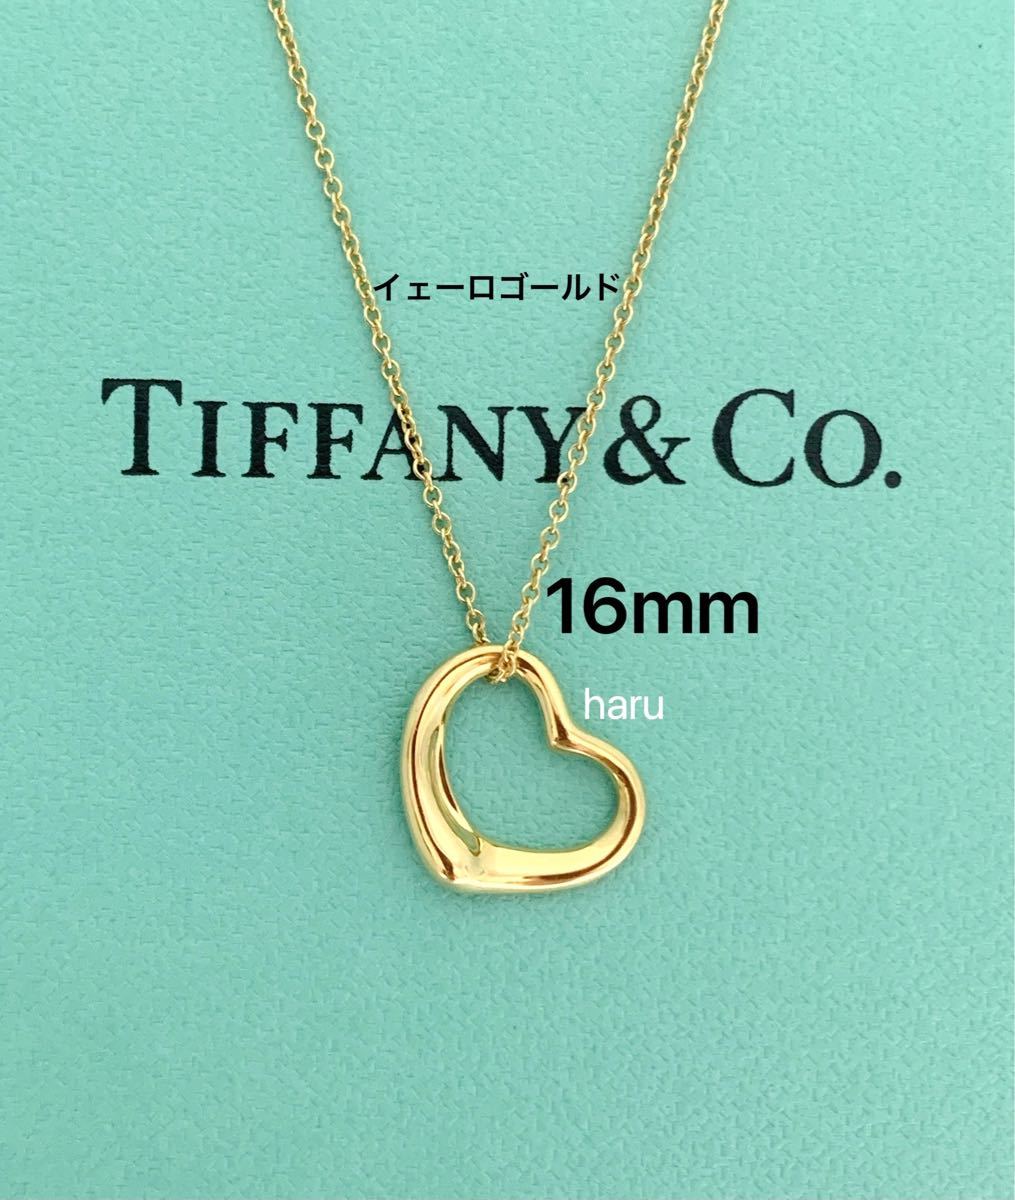 TIFFANY&Co.ティファニーオープンハートK18イェーロゴールドネックレス